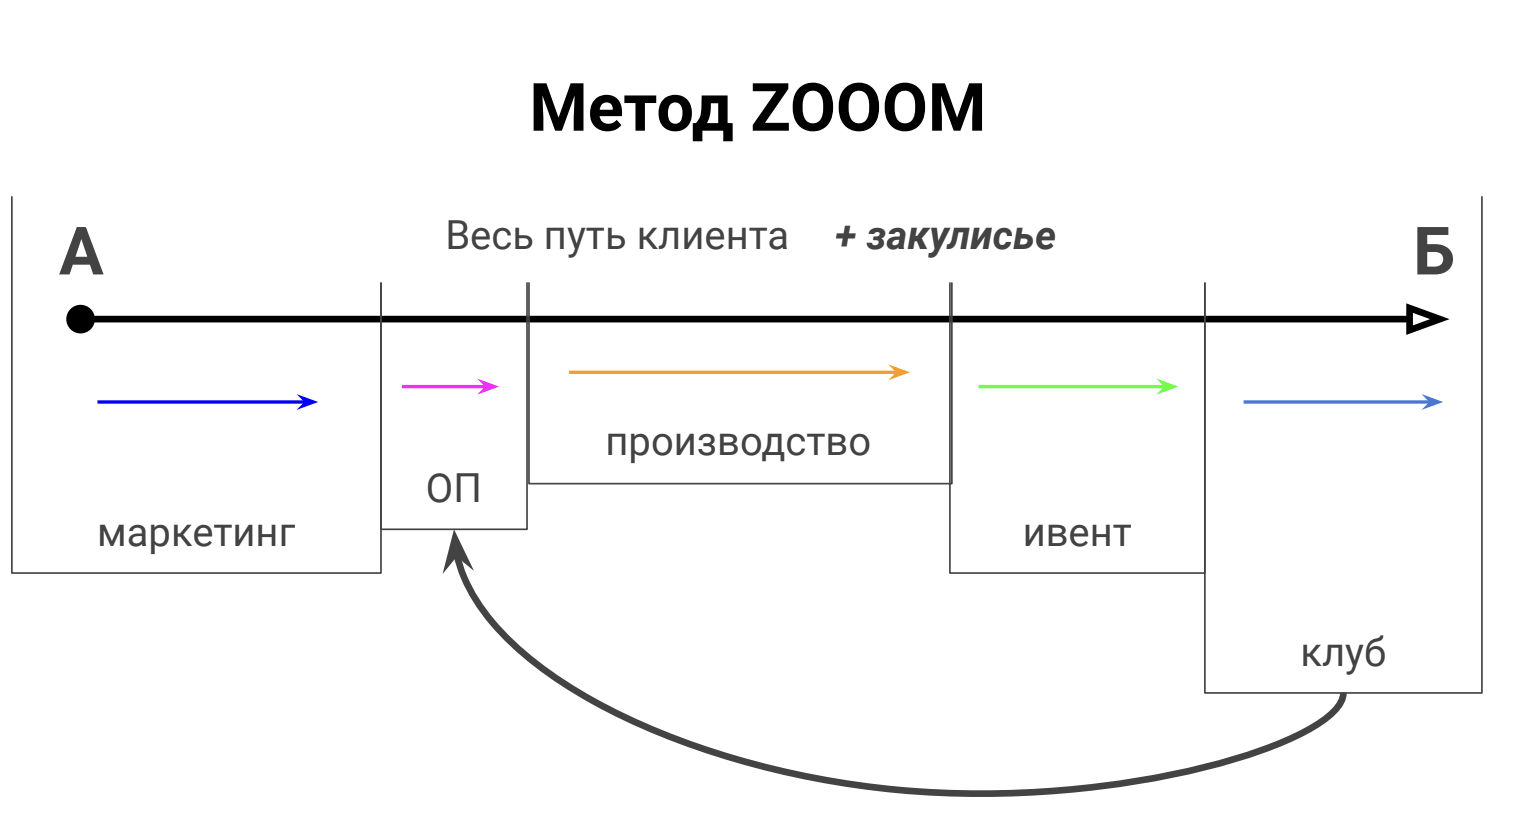 отдел продаж, метод zoom для развития отдела продаж